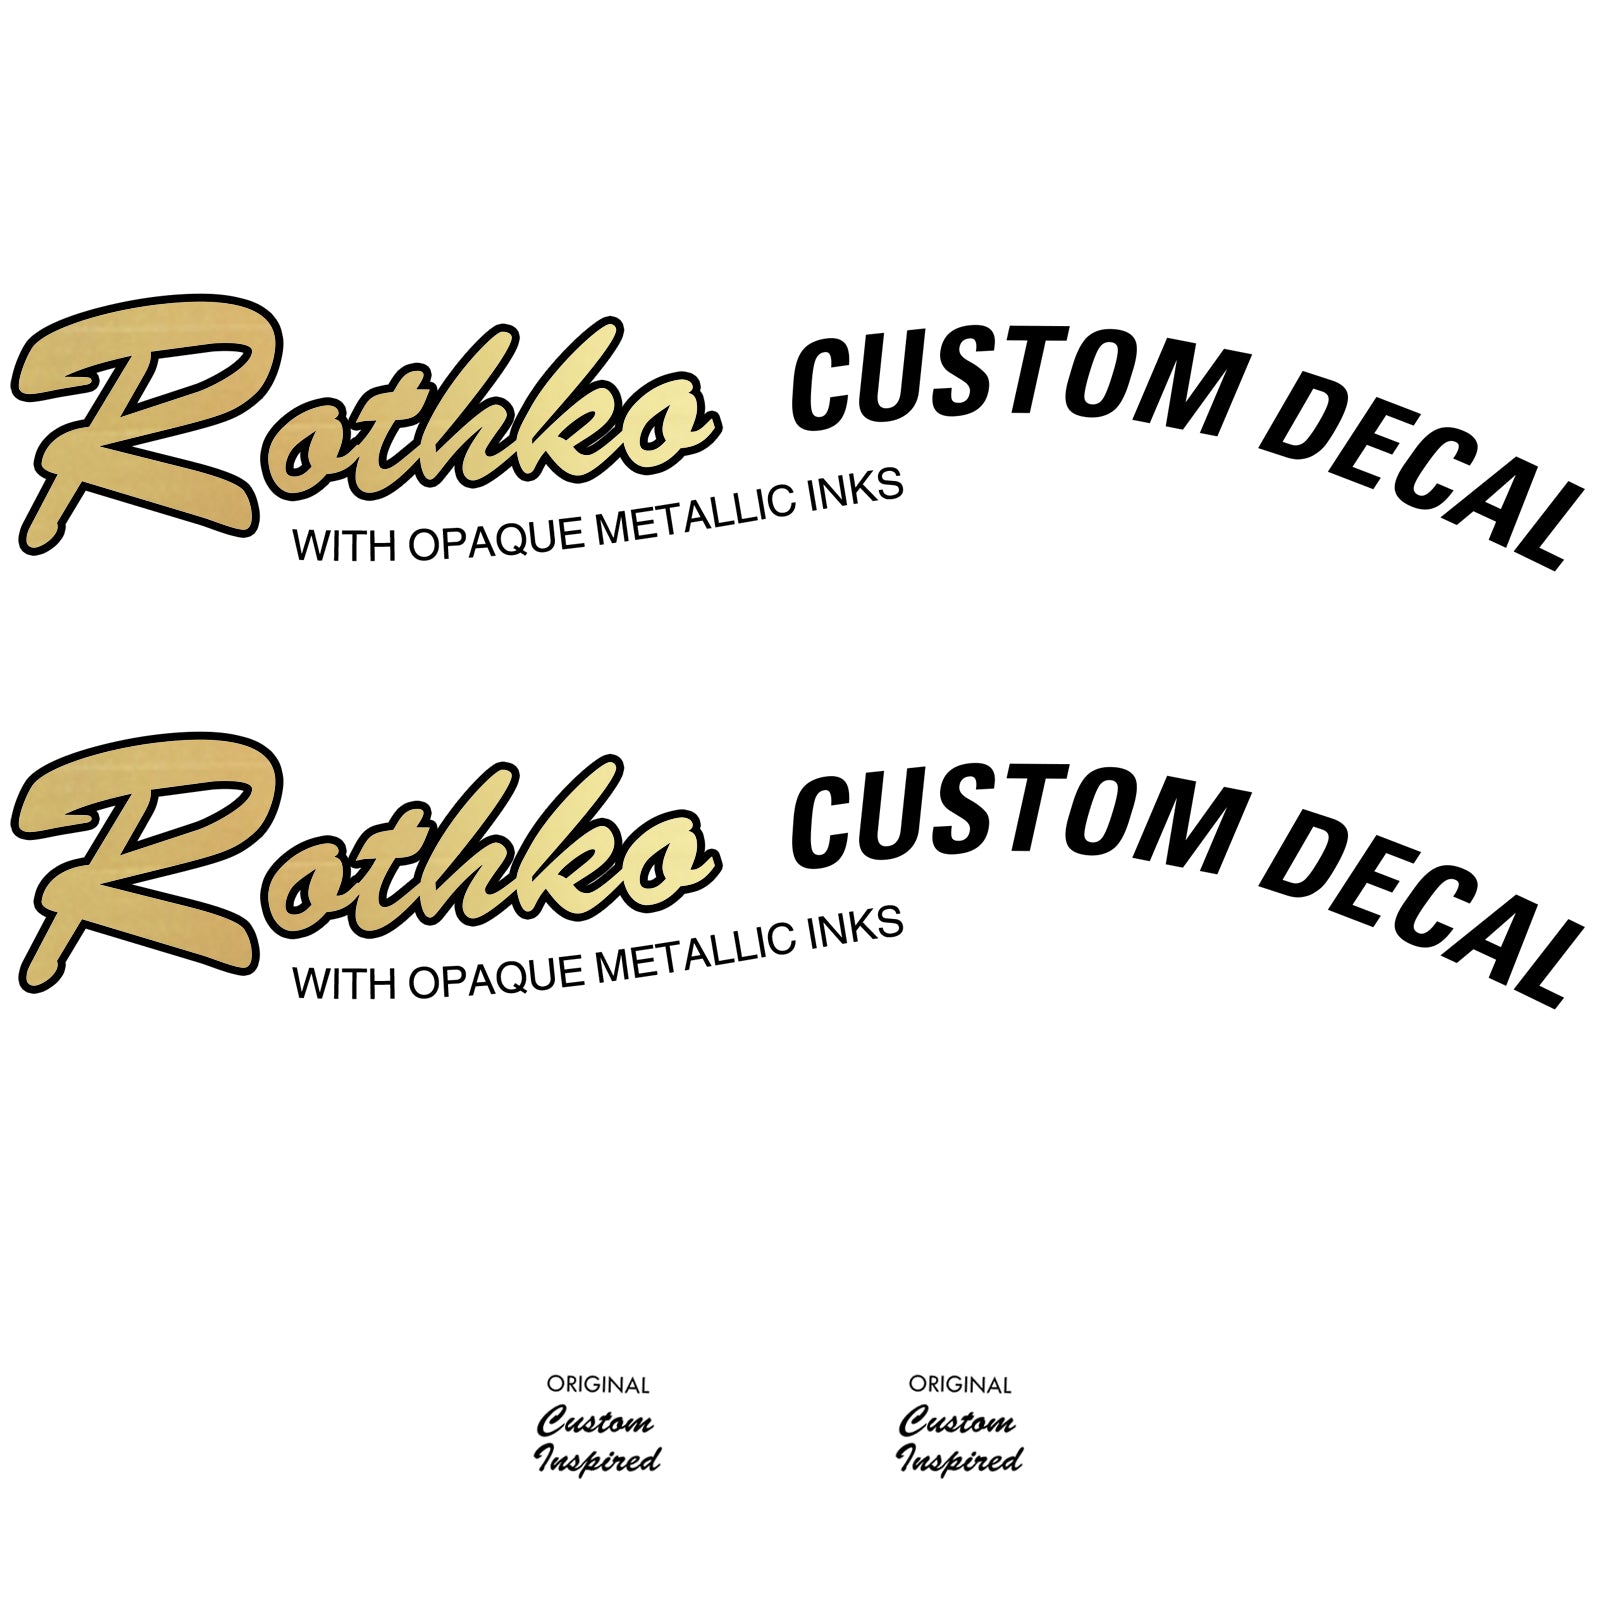 Custom Decals